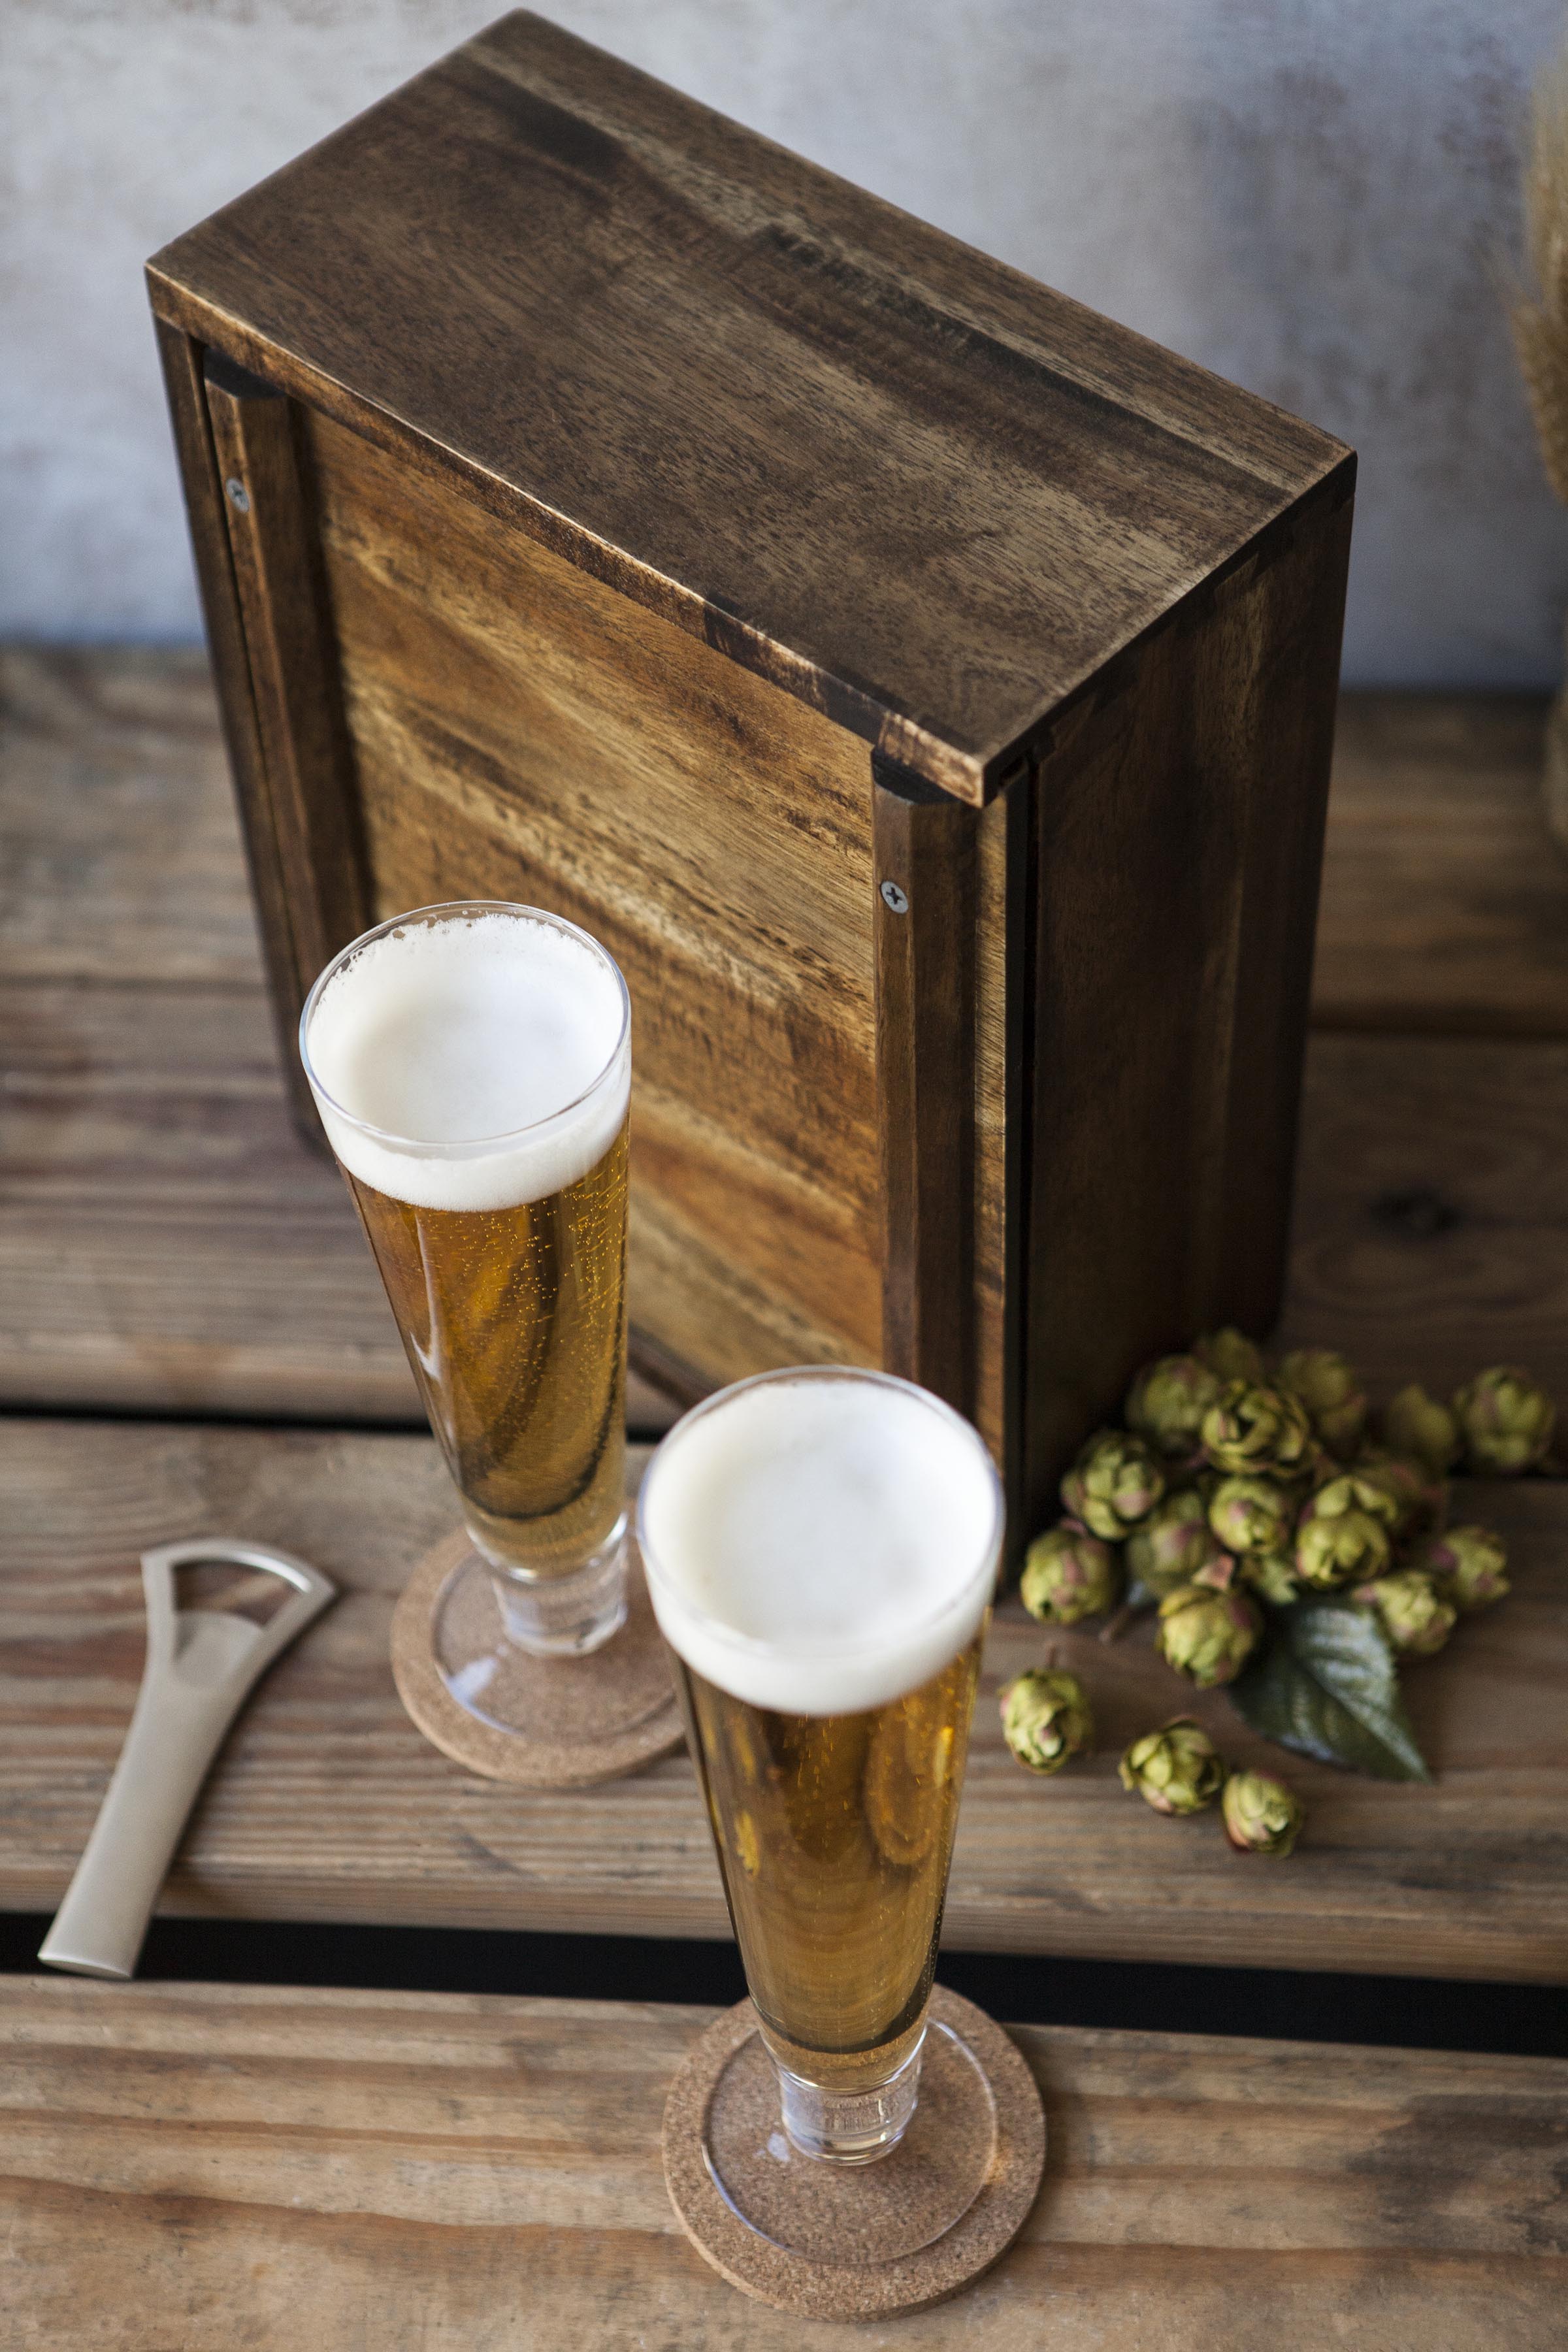 Pilsner Beer Glass Gift Set